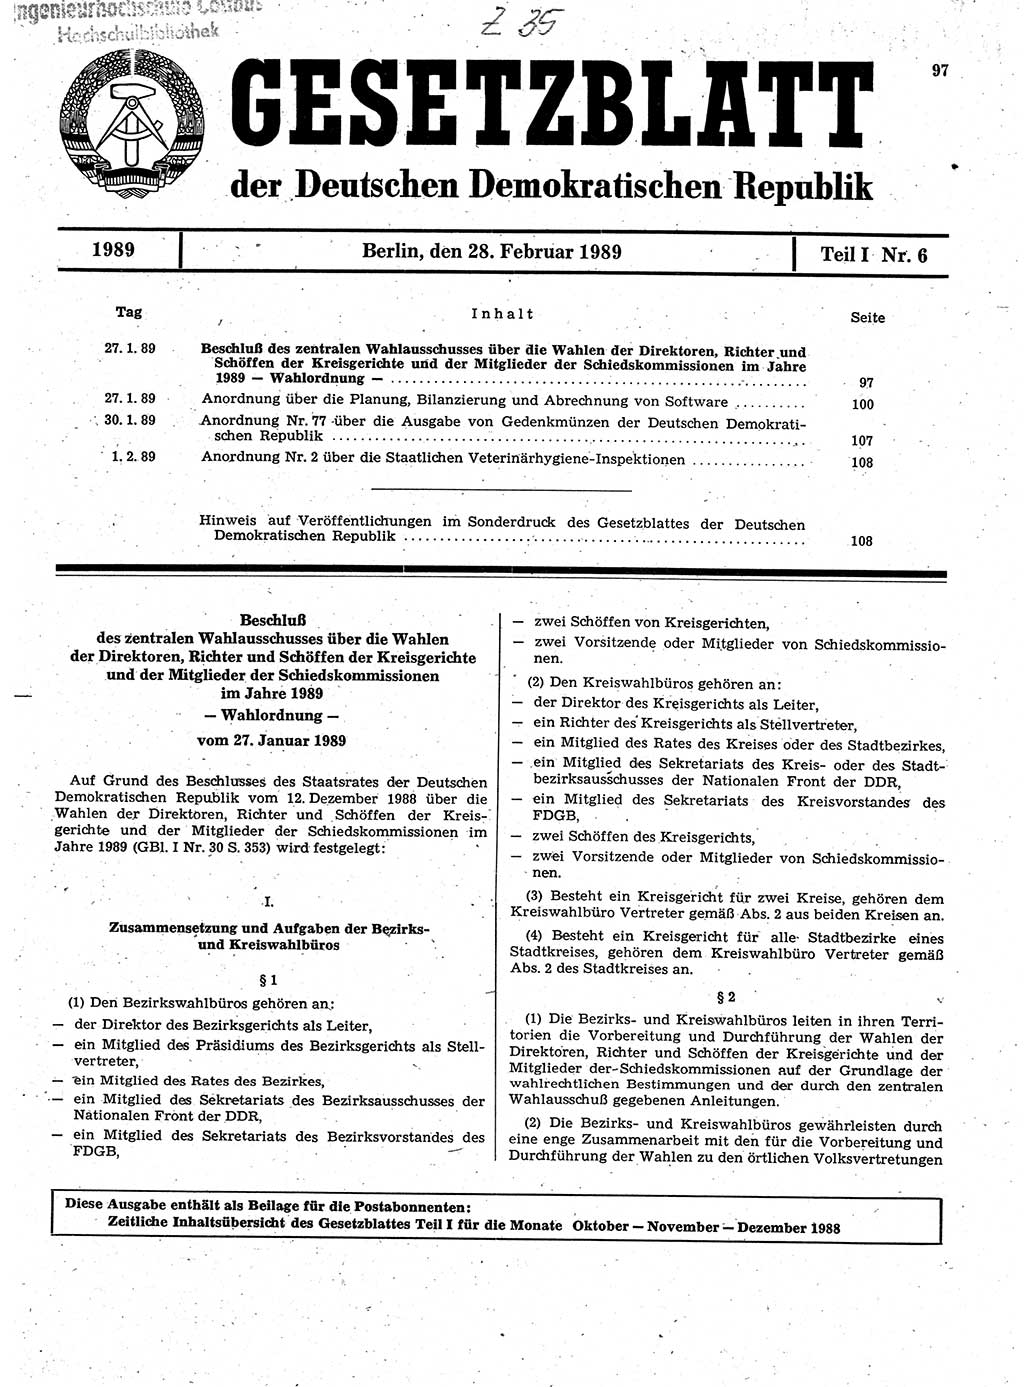 Gesetzblatt (GBl.) der Deutschen Demokratischen Republik (DDR) Teil Ⅰ 1989, Seite 97 (GBl. DDR Ⅰ 1989, S. 97)